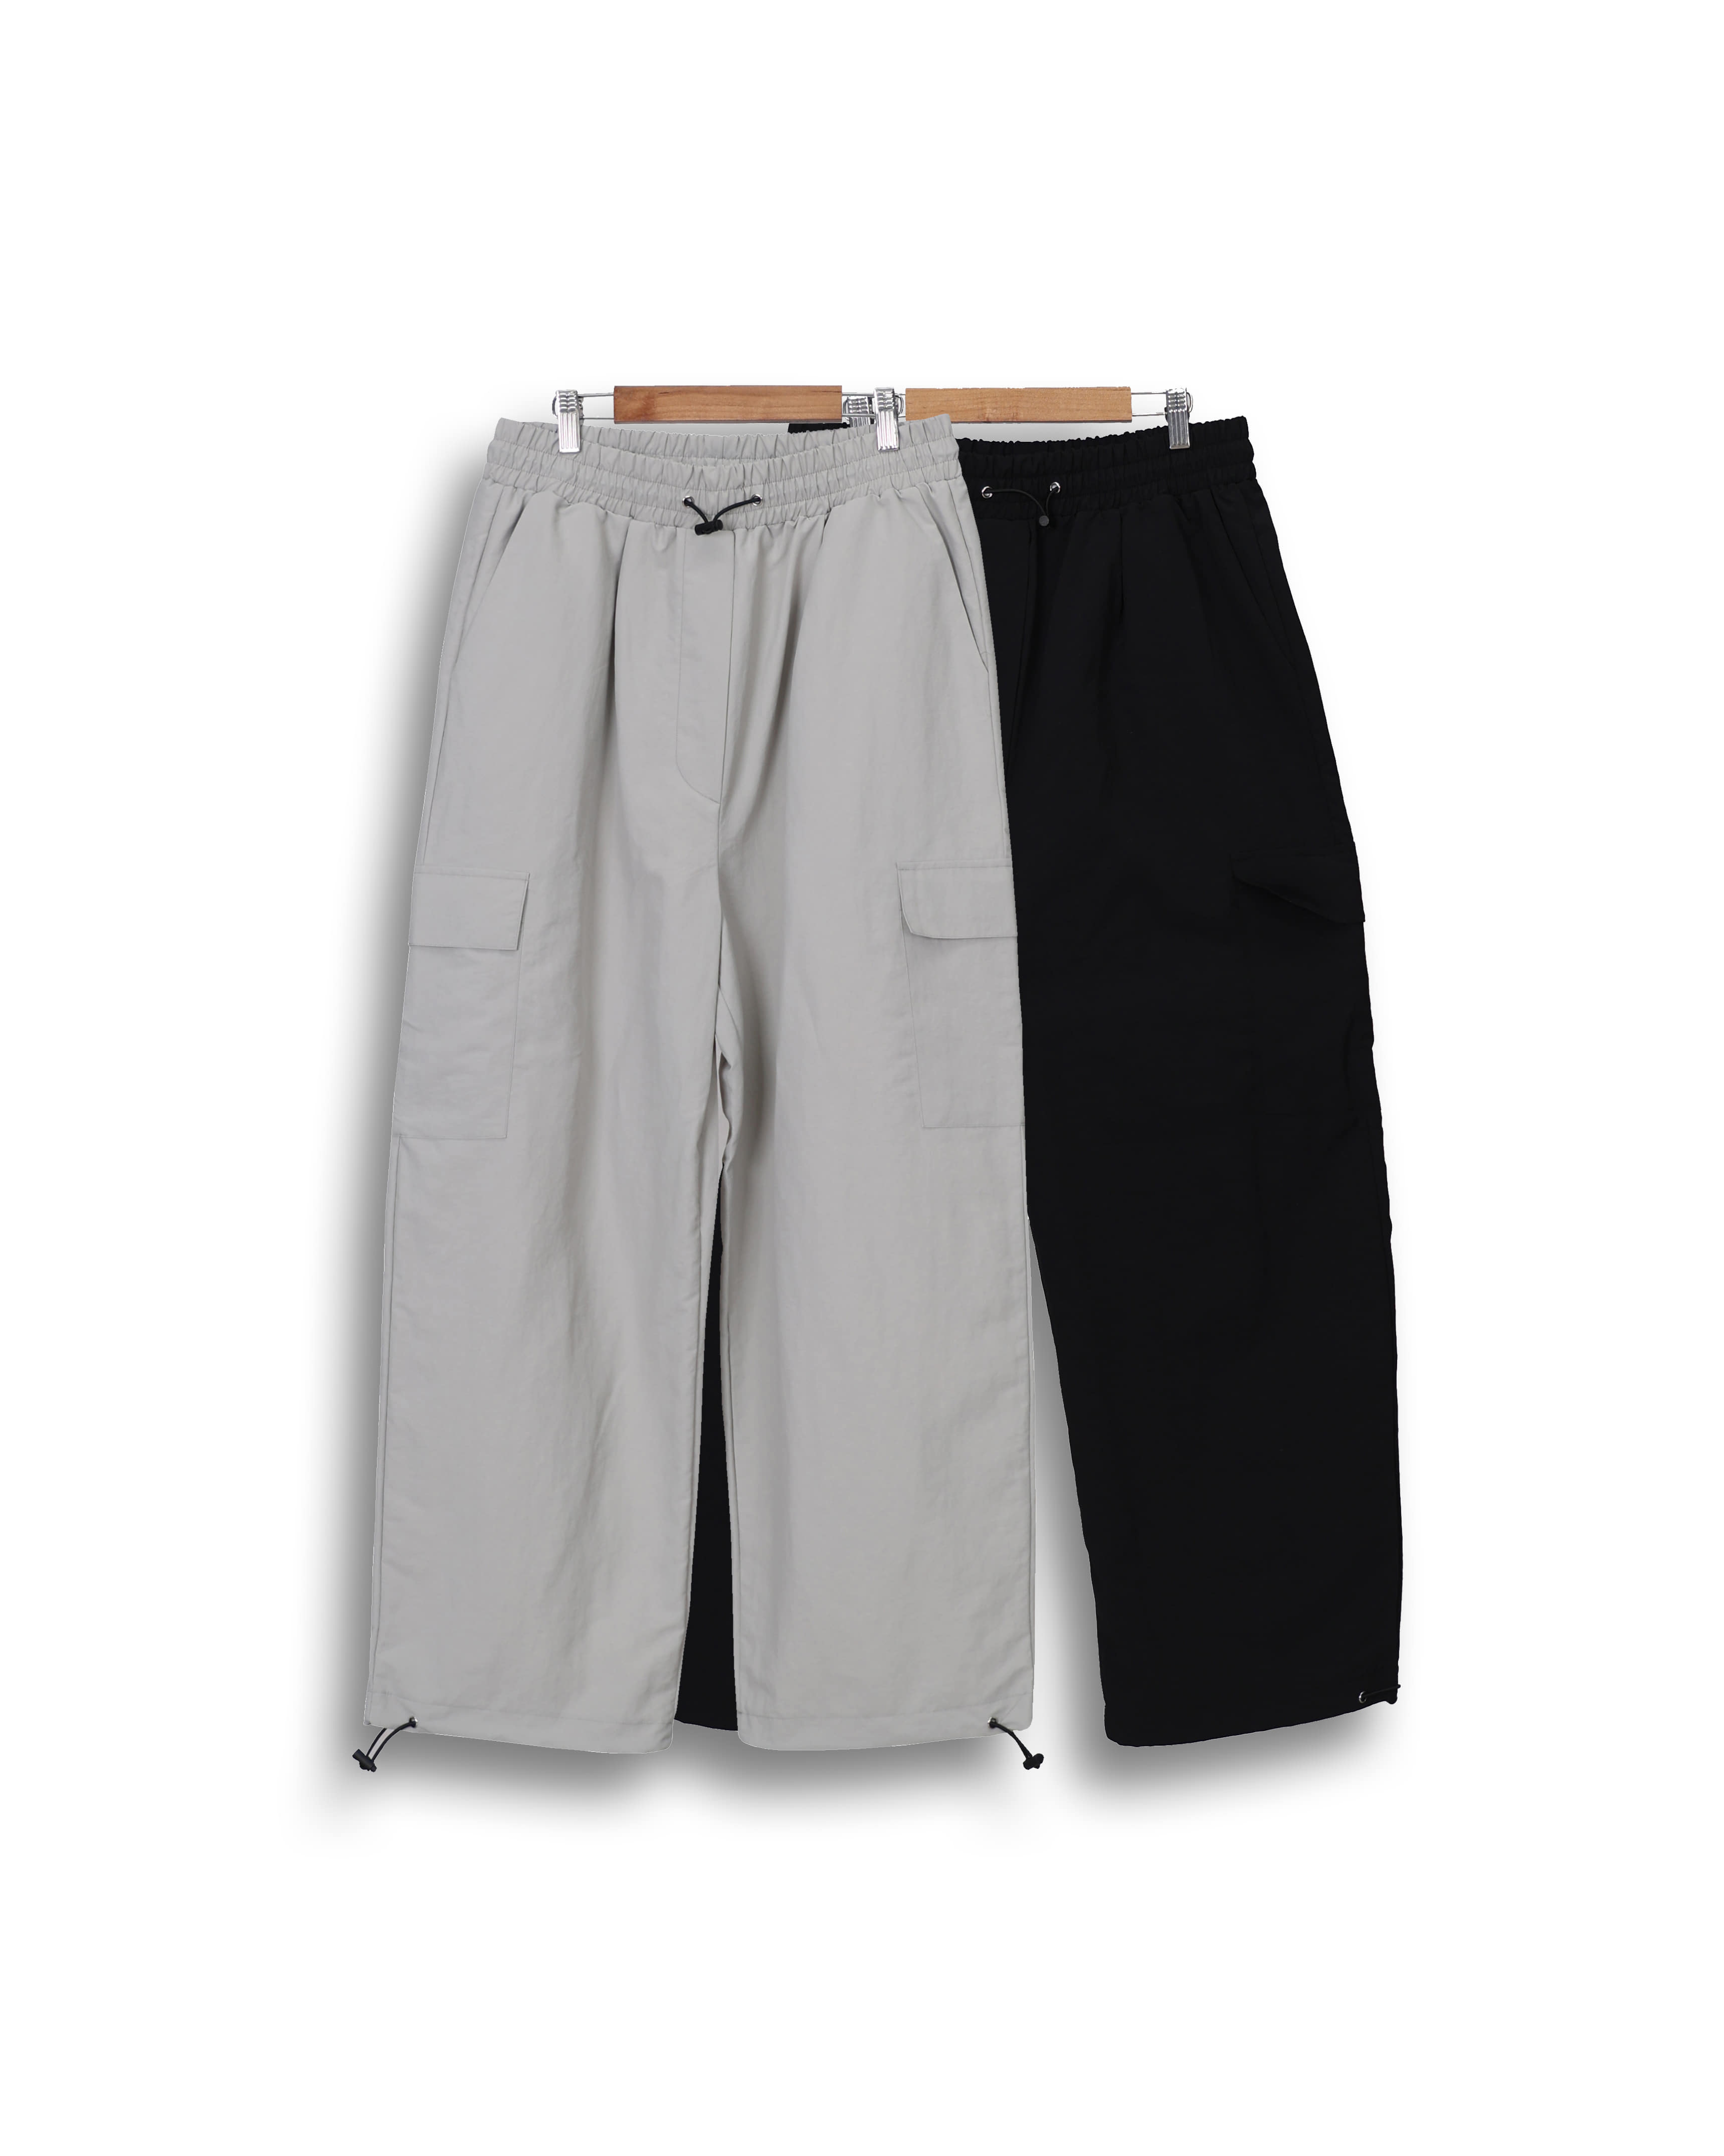 DENE Simple String Nylon Pants (Black/Gray)